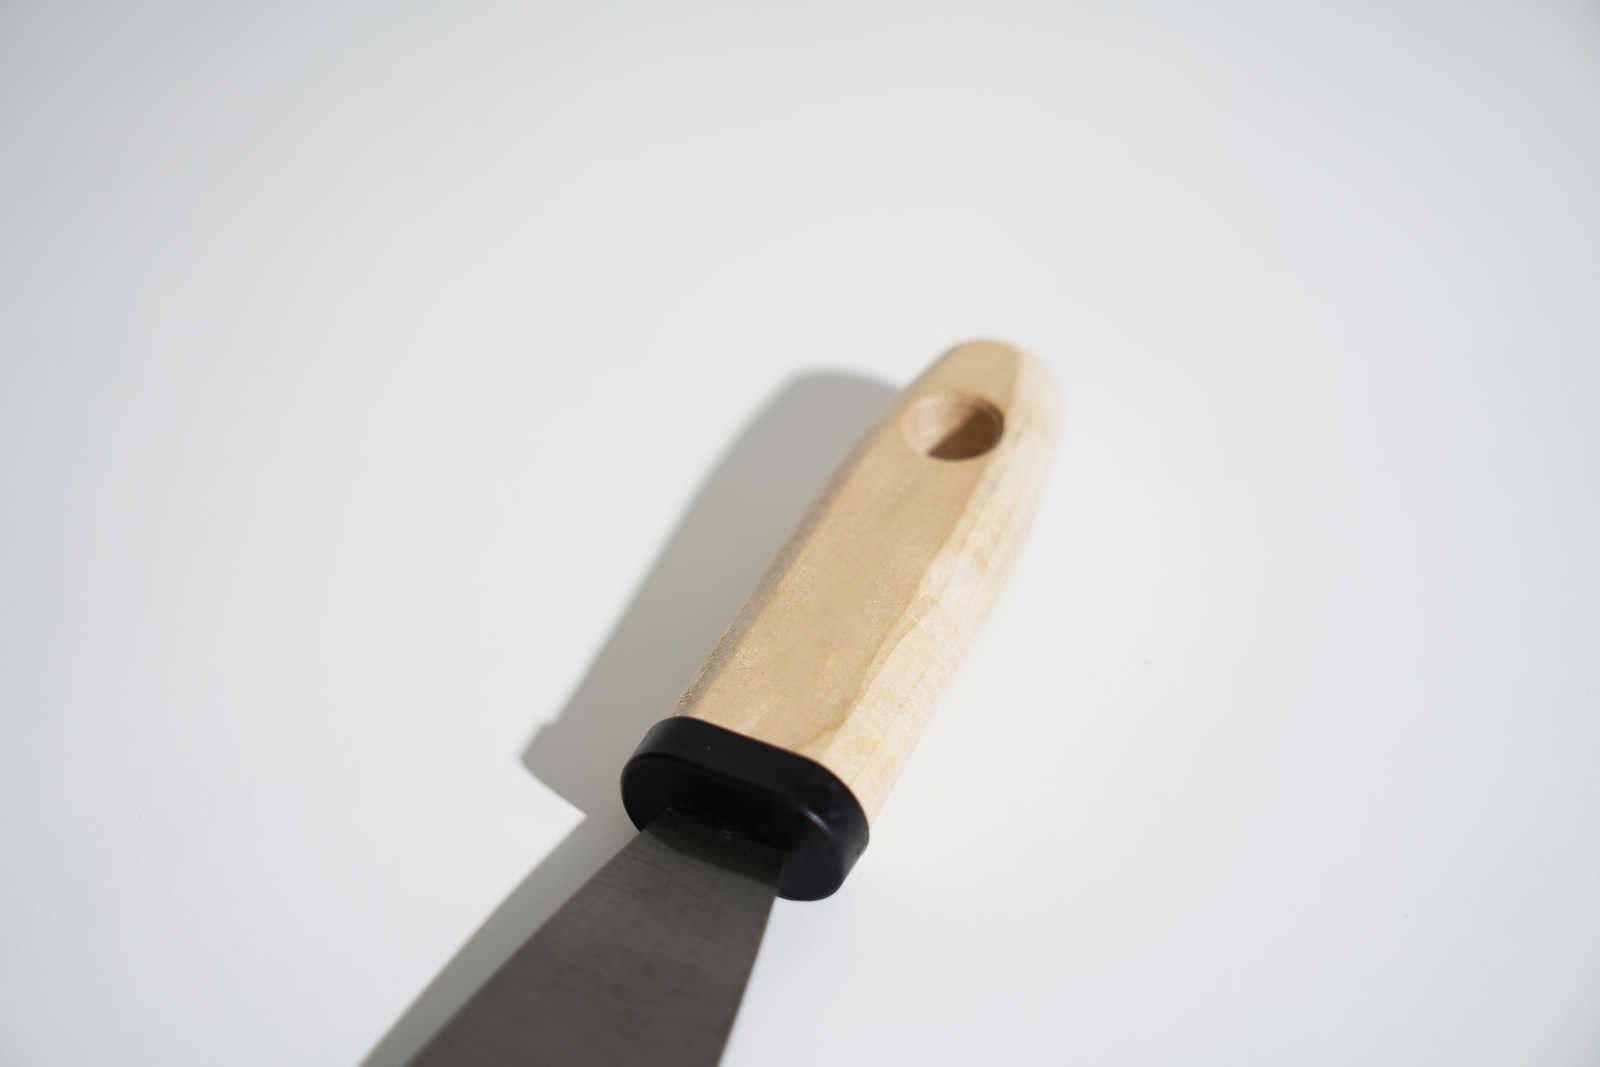             Spatola da pittore 40 mm con lama flessibile in acciaio e manico in legno
        